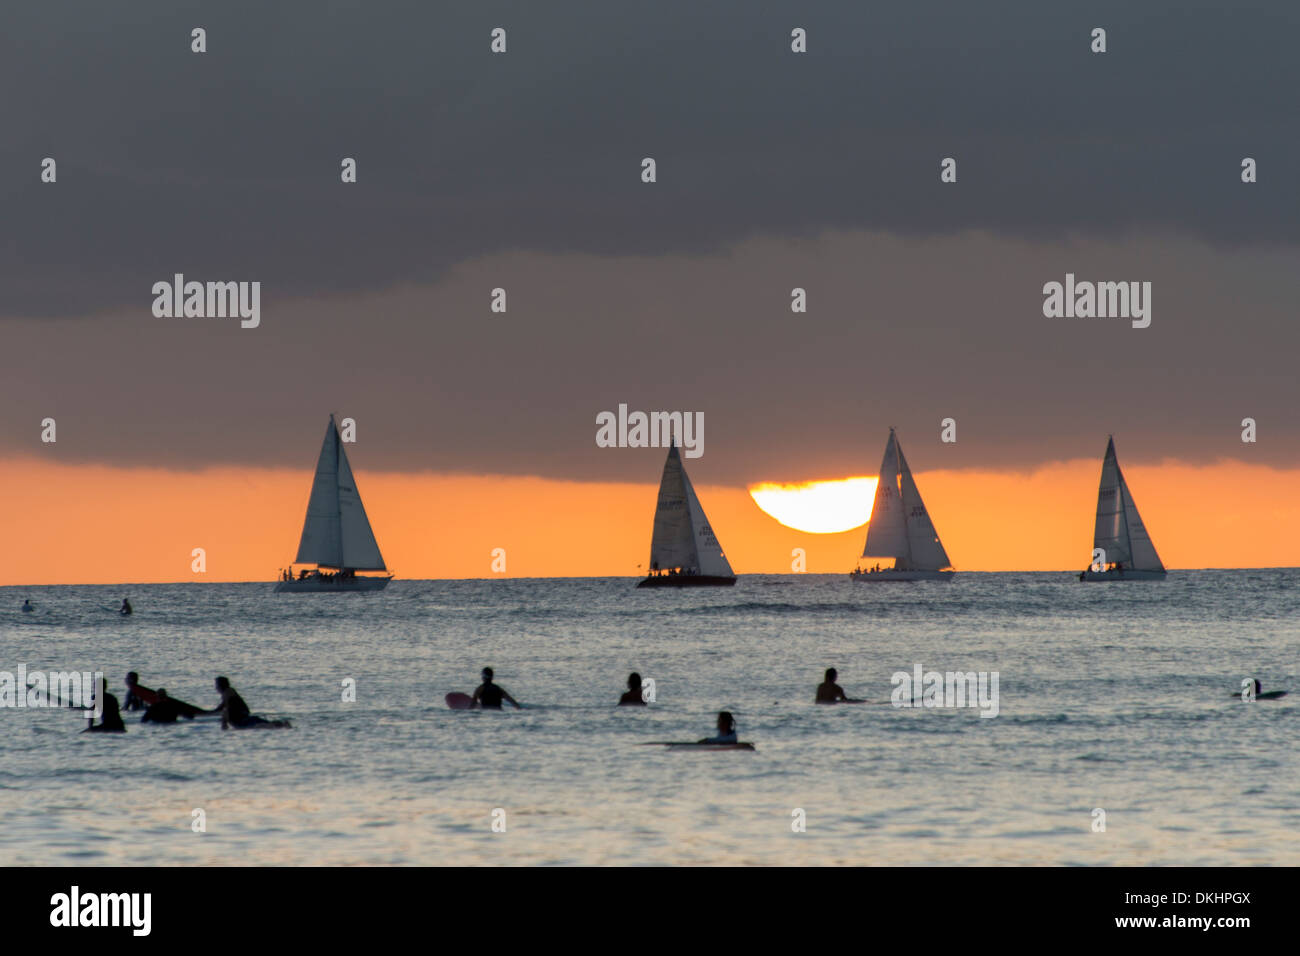 Les surfeurs sur la plage avec voiliers dans l'arrière-plan au coucher du soleil, Waikiki, Honolulu, Oahu, Hawaii, USA Banque D'Images